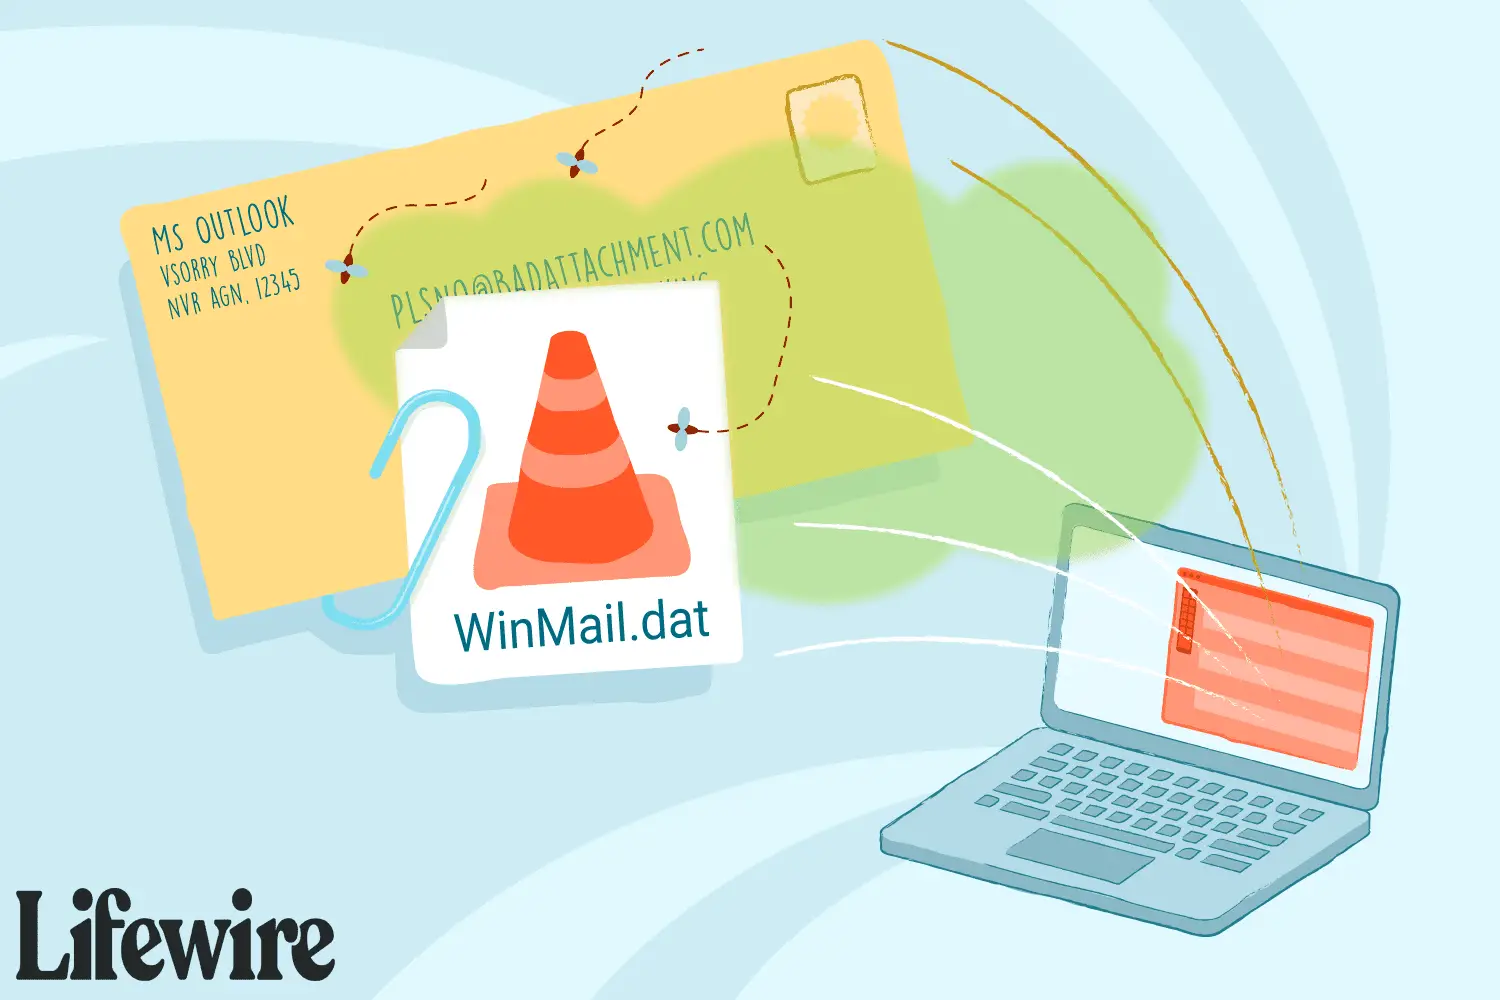 Uma ilustração mostrando arquivos winmail.dat anexados a um e-mail.